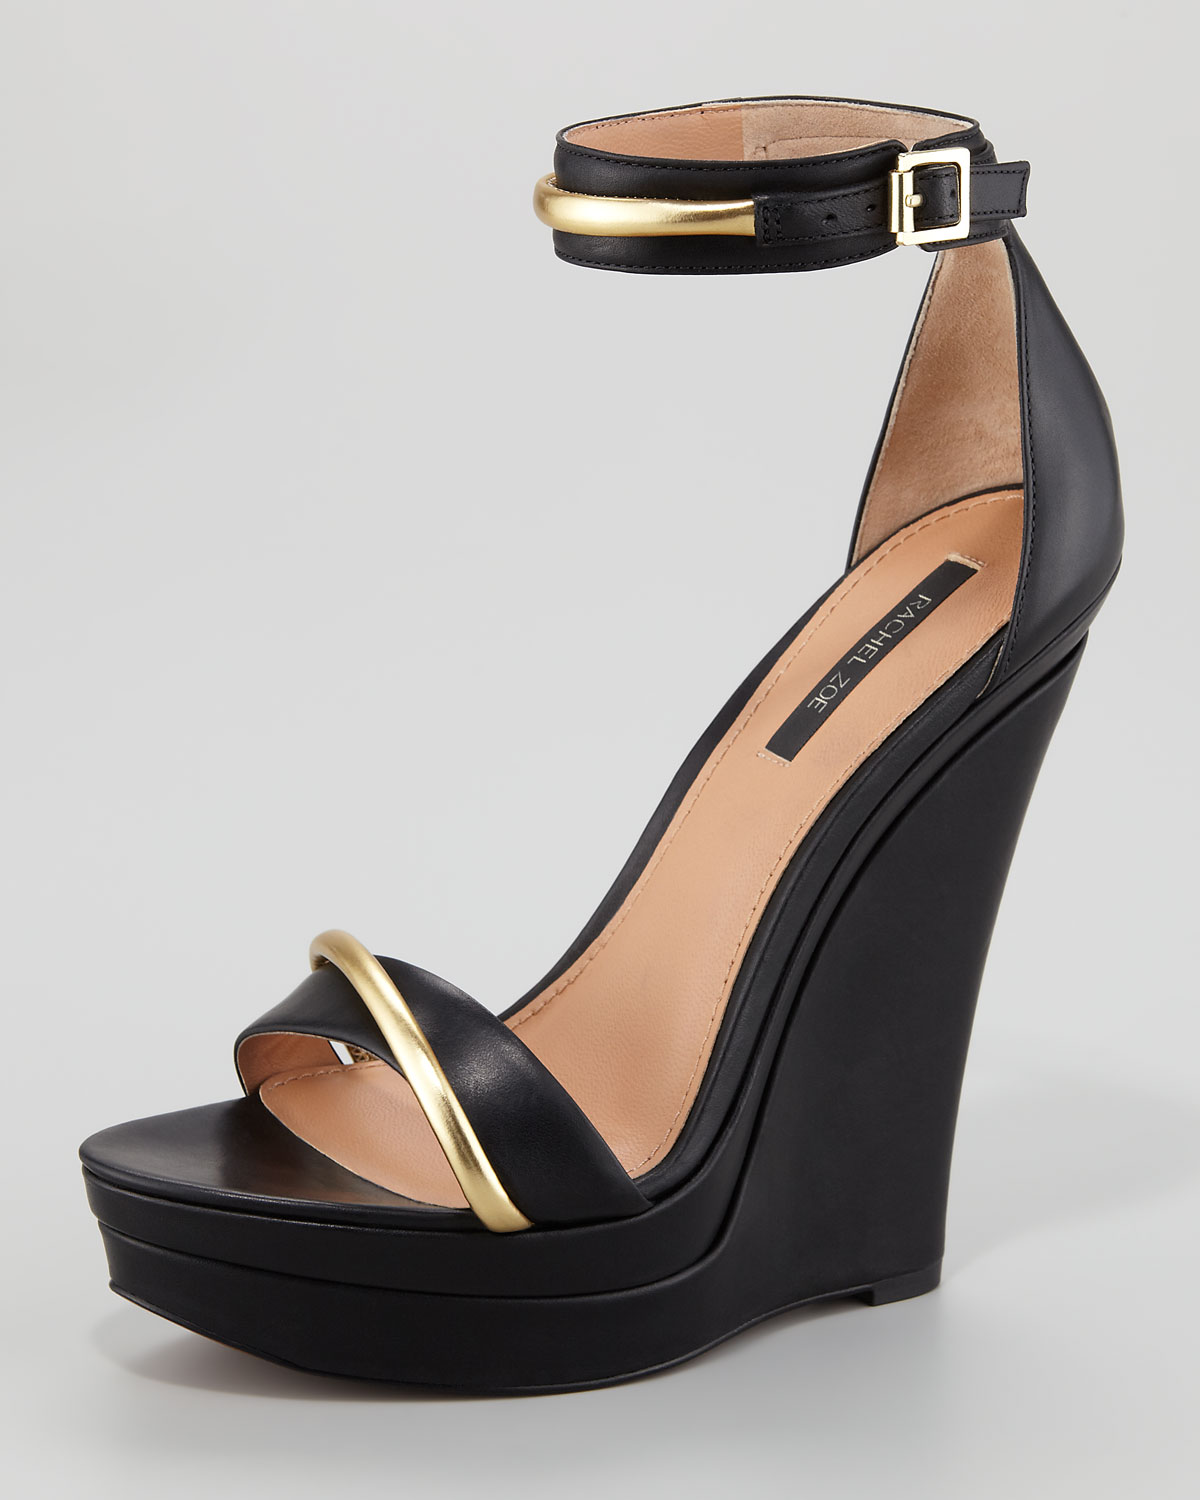 Rachel Zoe Katlyn Platform Wedge Sandal in Black/Gold (Black) - Lyst